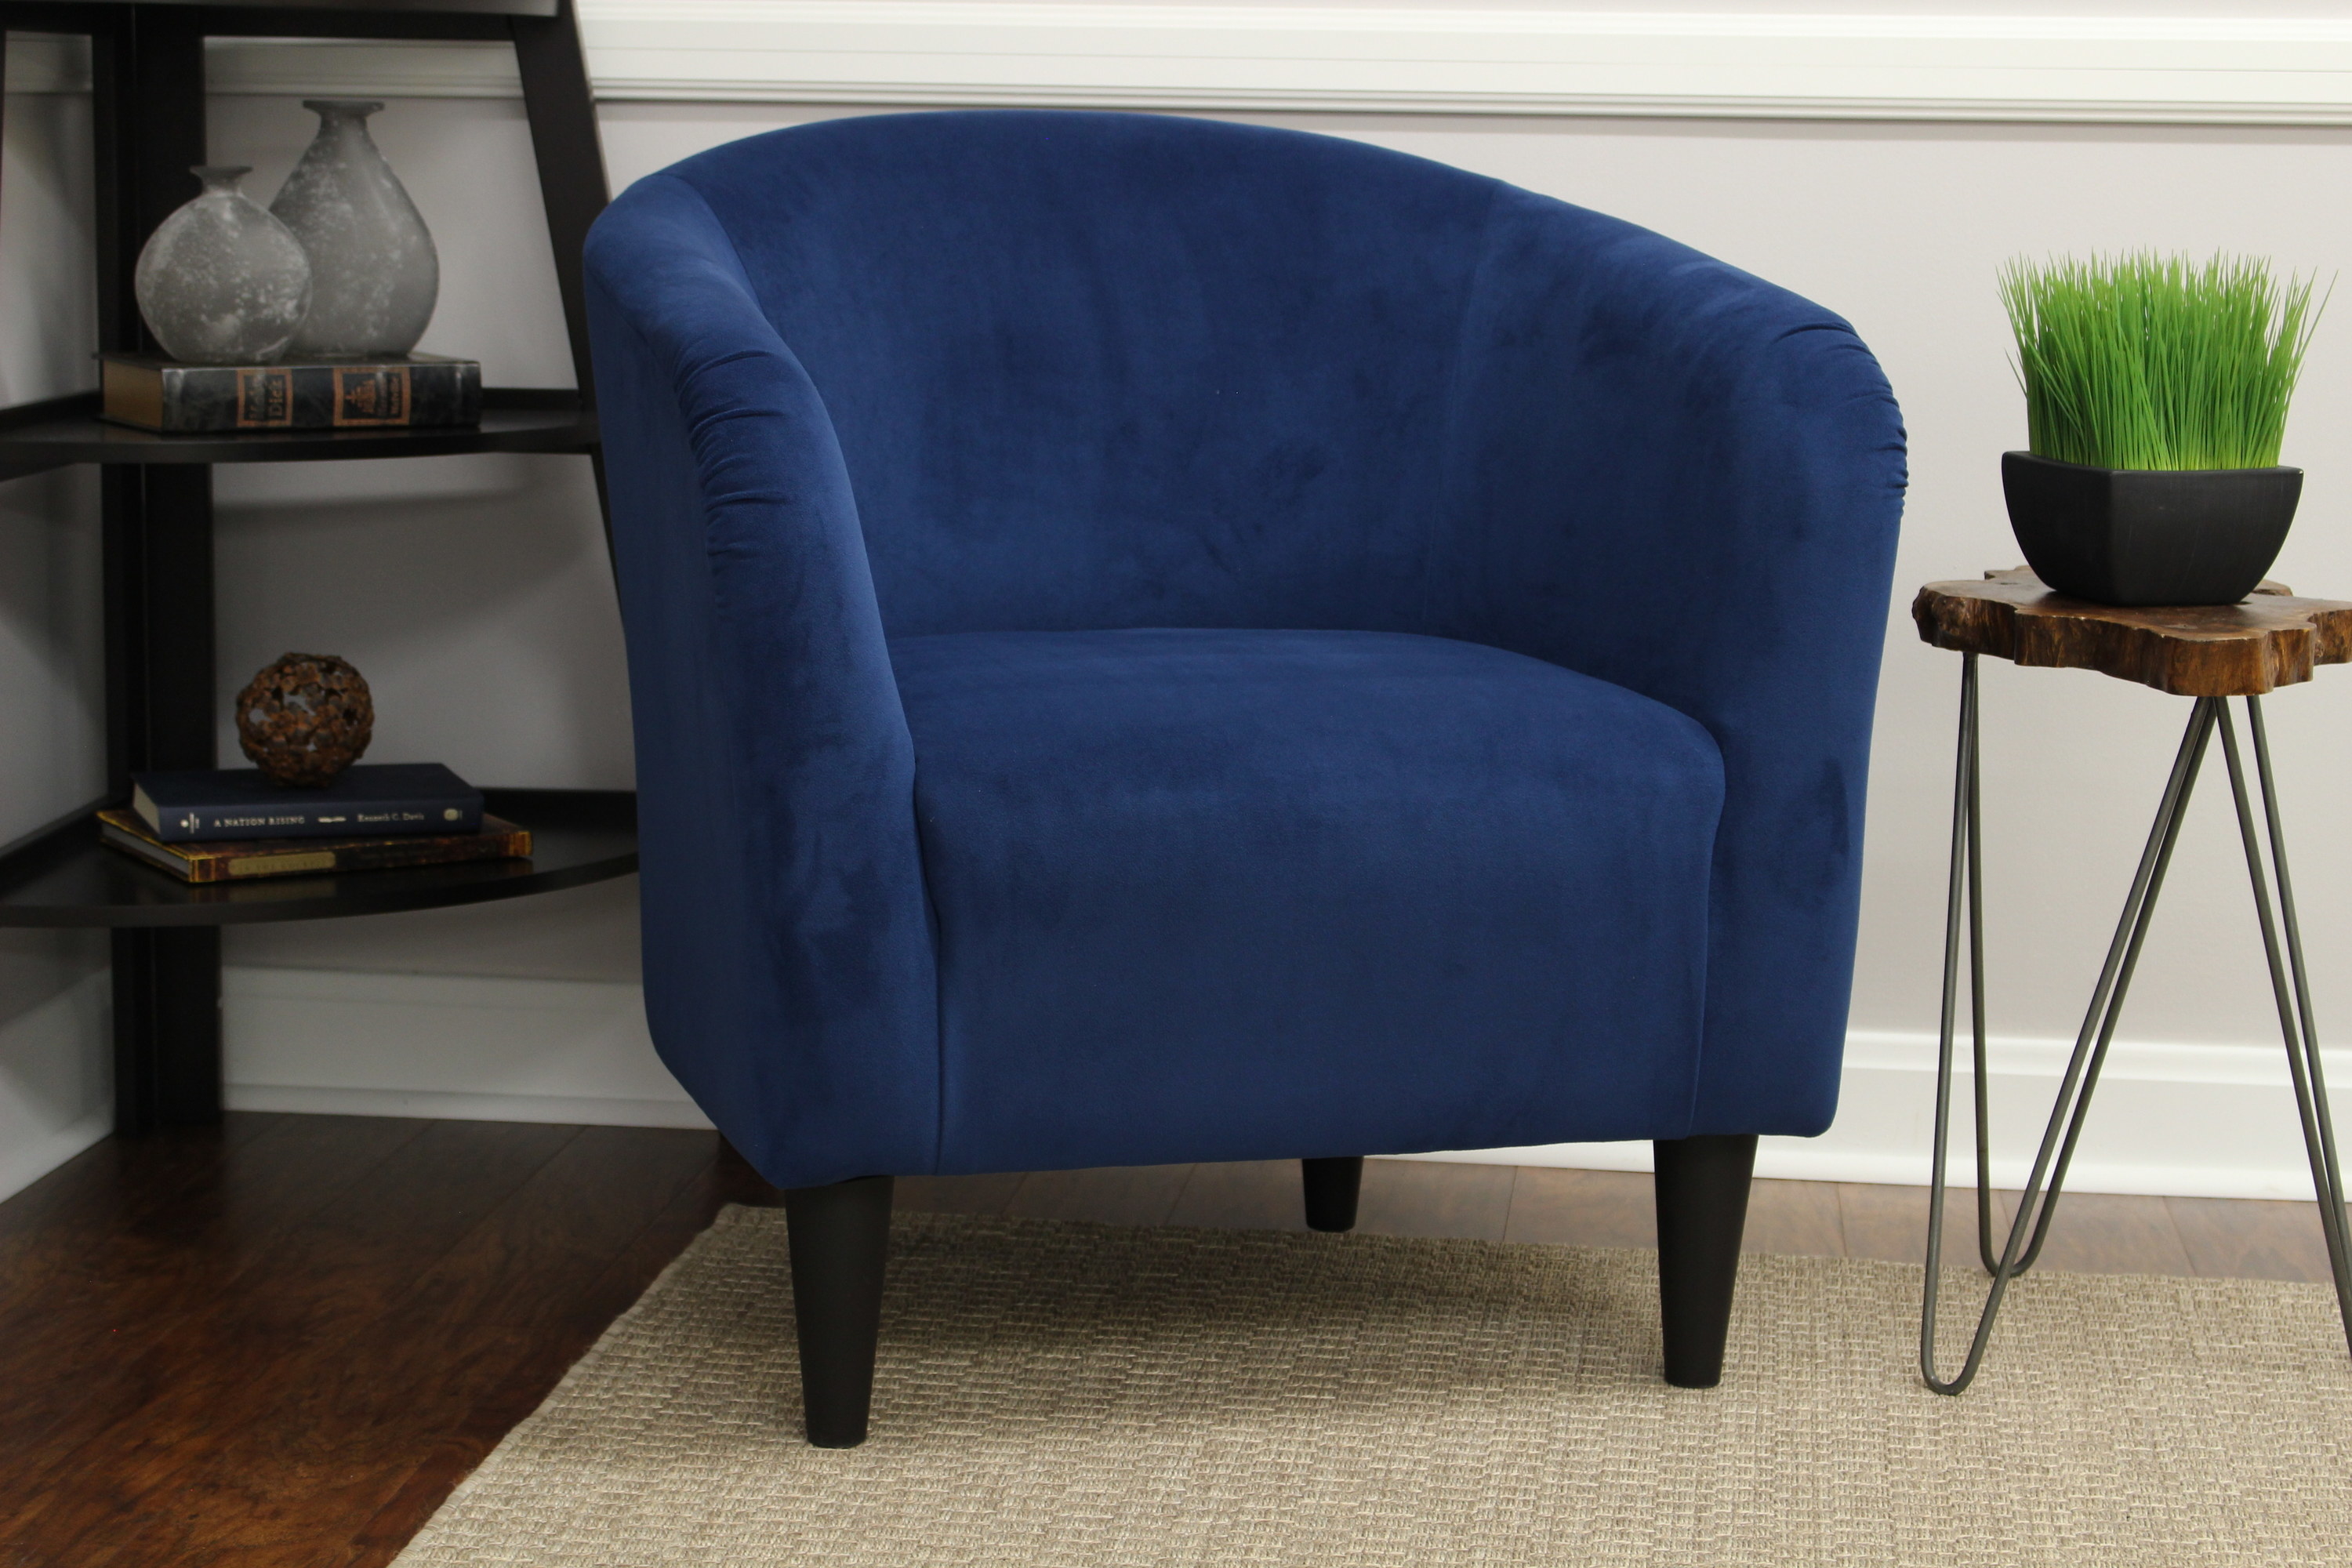 The dark blue velvet chair 